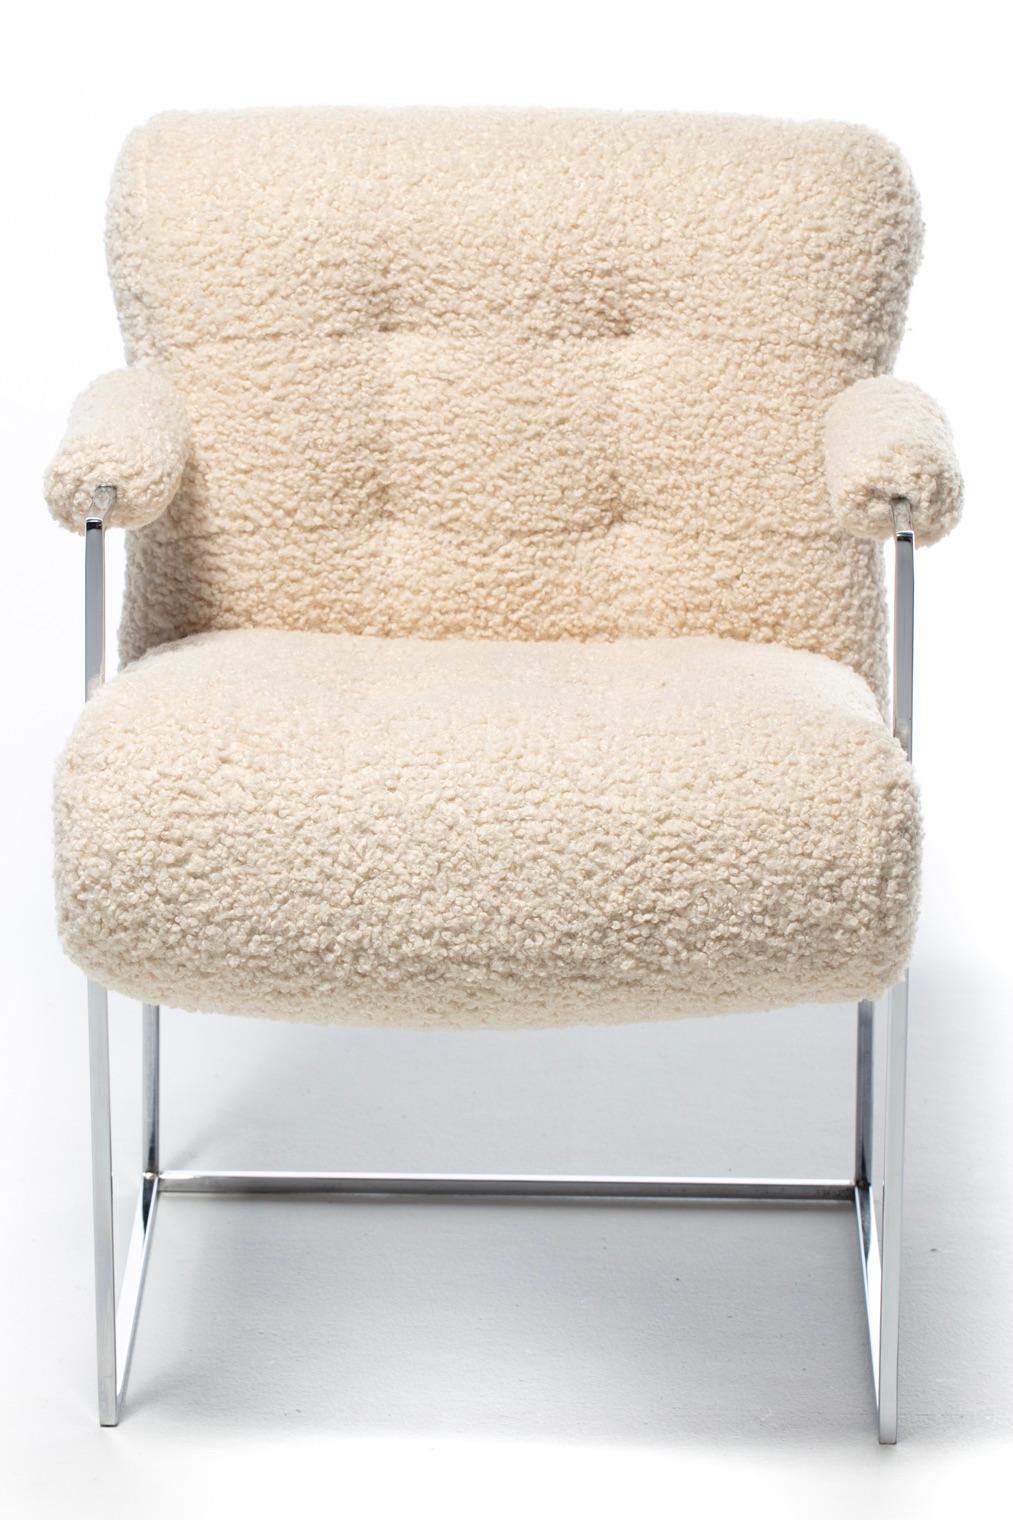 Comme si c'était trop beau pour être vrai, cet ensemble de douze chaises chromées du designer Milo Baughman, icône de la modernité du milieu du siècle dernier, a été remeublé de manière professionnelle en bouclé ivoire. Bonjour Sexy ! La silhouette